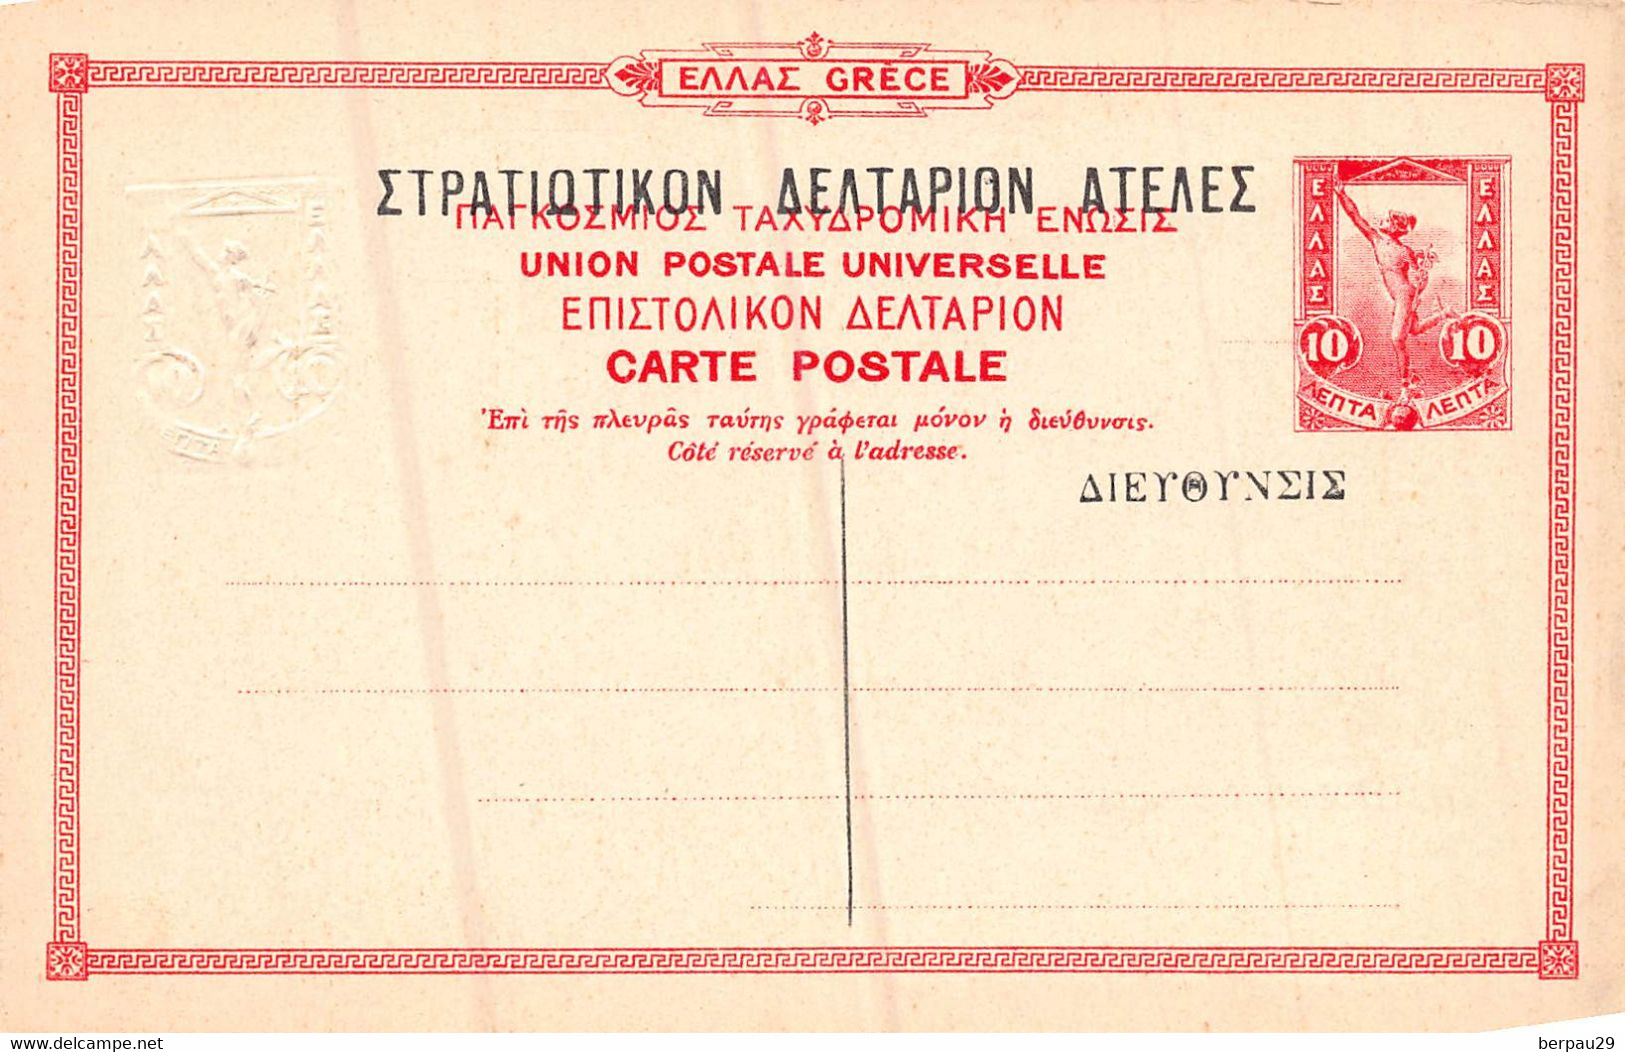 GRECE - LOT of 10 old postcards  ENTIER POSTAL ( entiers postaux 10  & 5 rouge et vert - Athenes , EGHION , Larissa